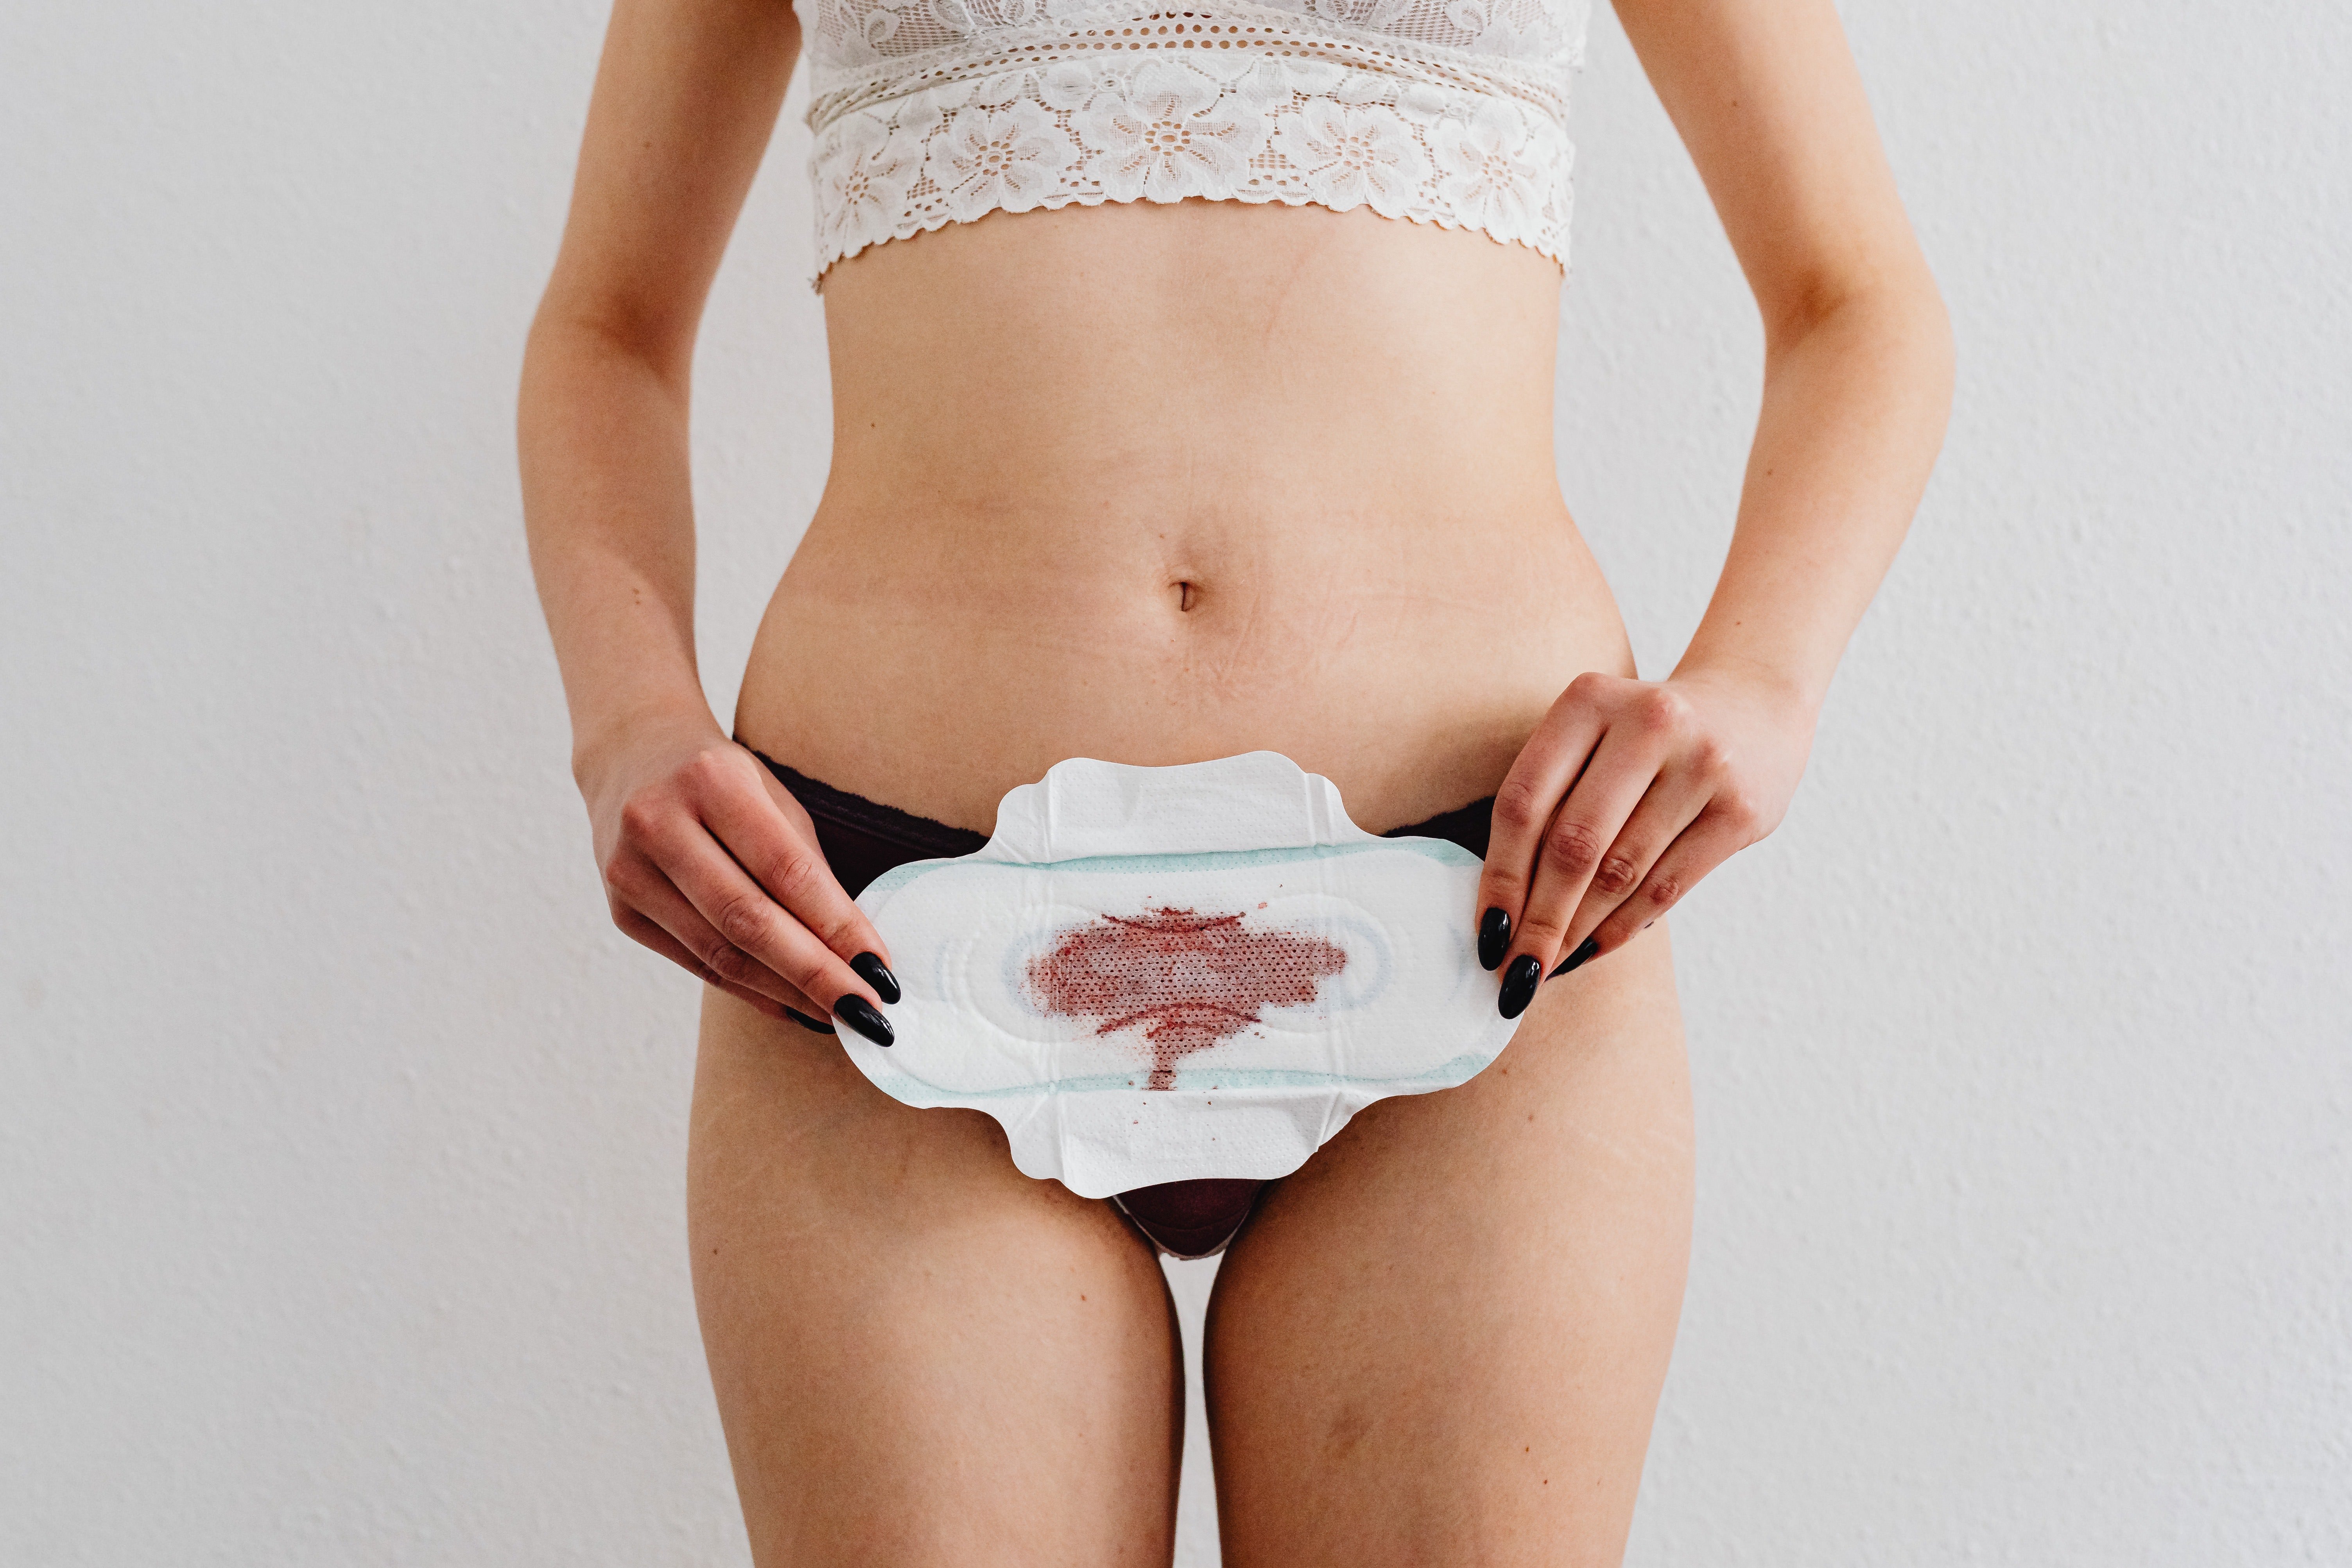 "La regla no és bruta ni fastigosa": la normalització de la menstruació a la pantalla